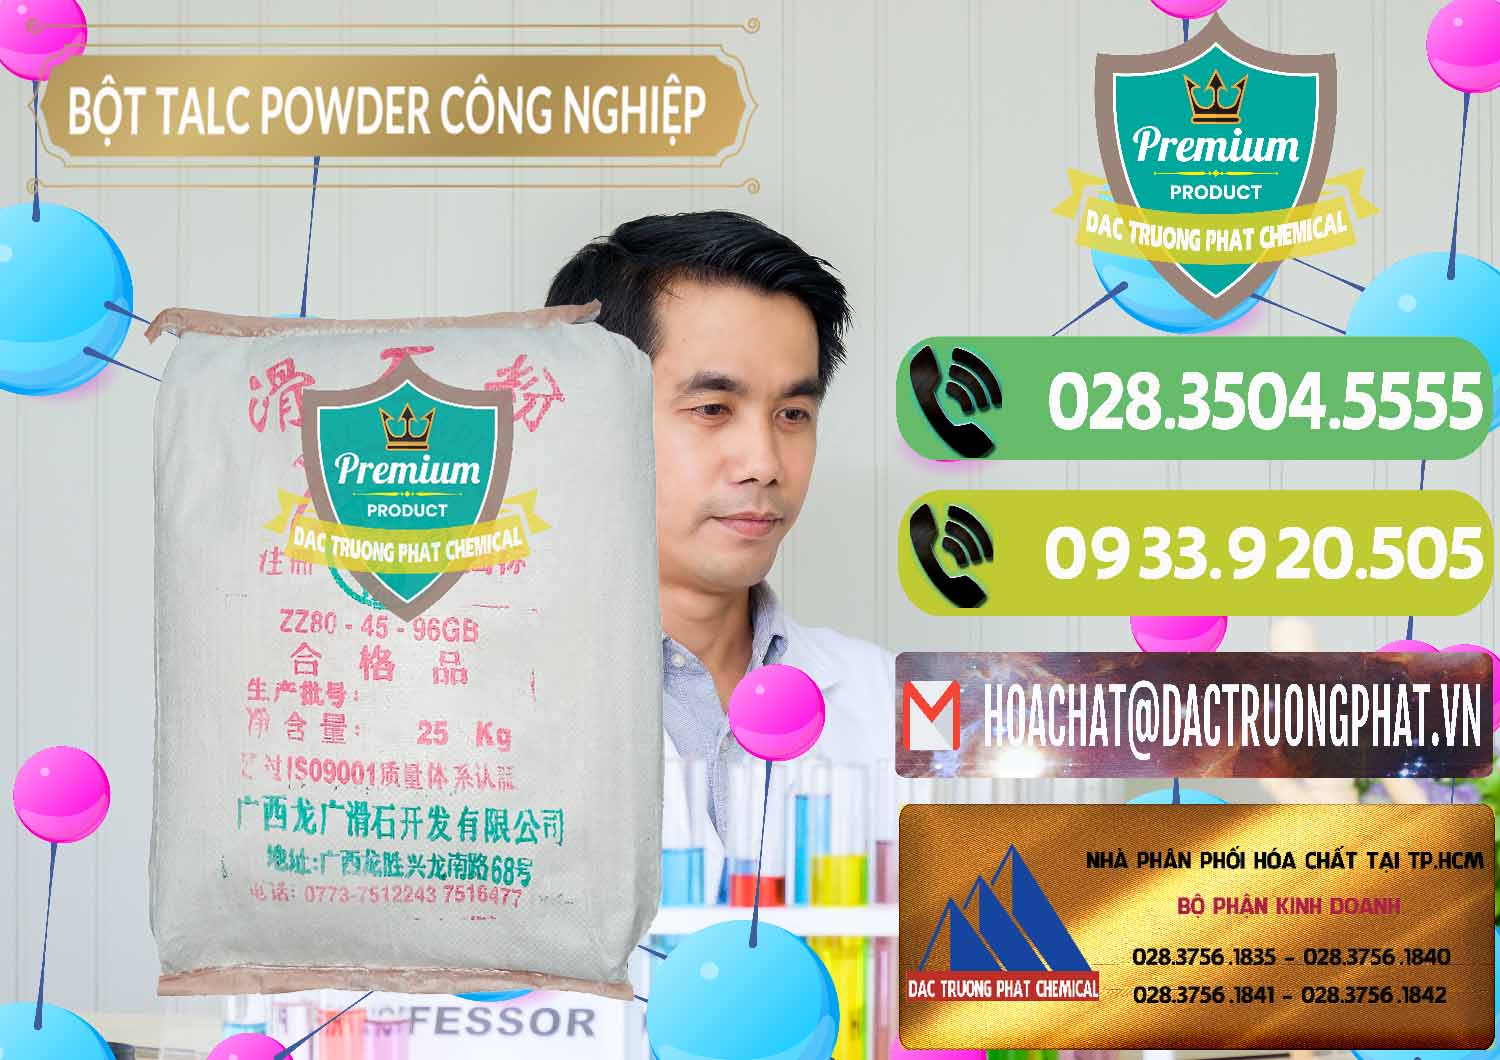 Chuyên cung ứng - bán Bột Talc Powder Công Nghiệp Trung Quốc China - 0037 - Chuyên phân phối và bán hóa chất tại TP.HCM - hoachatmientay.vn